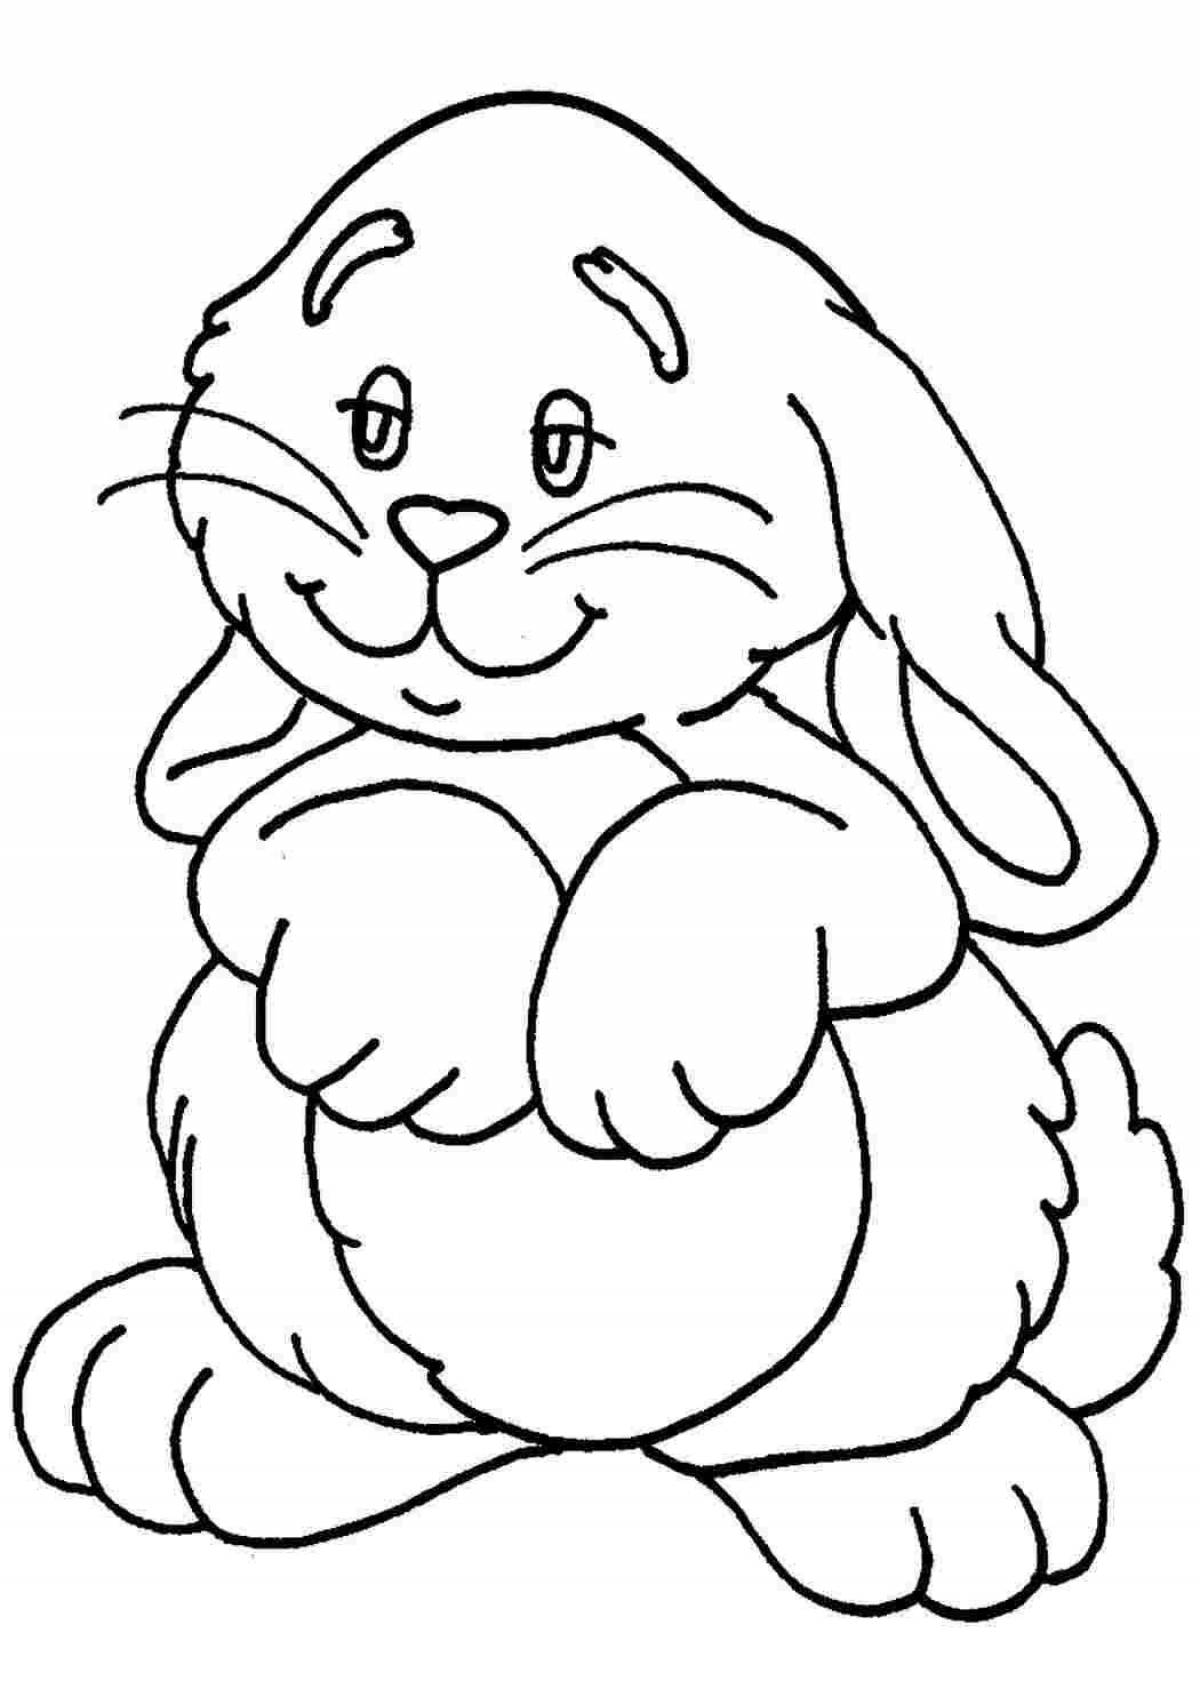 Fuzzy coloring baby bunny